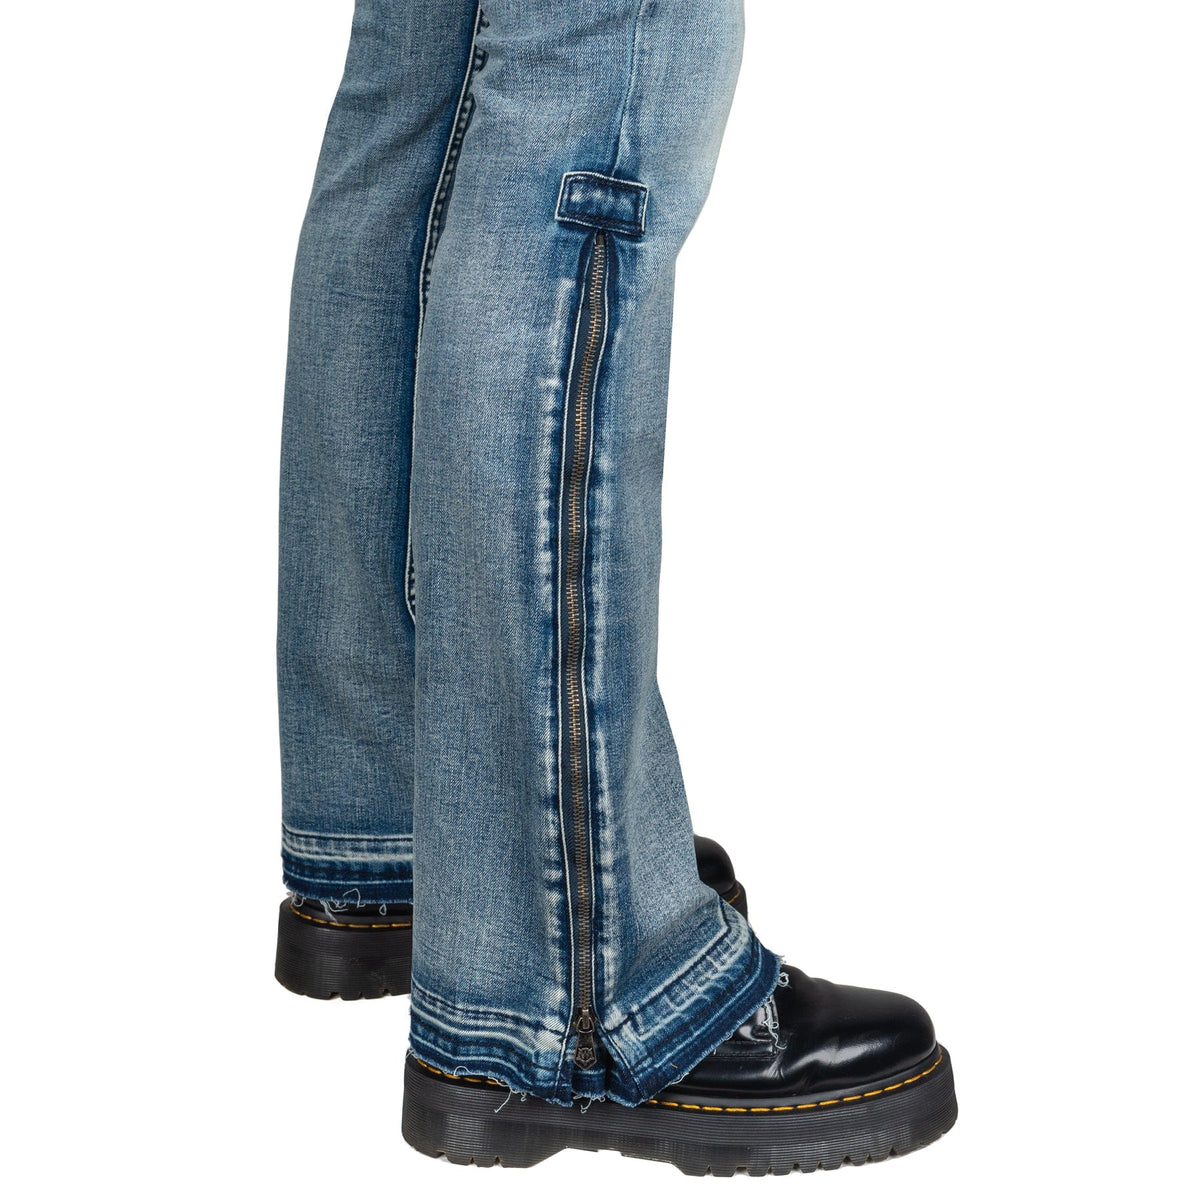 Wornstar Clothing Hellraiser Side Zipper Jeans - Classic Blue